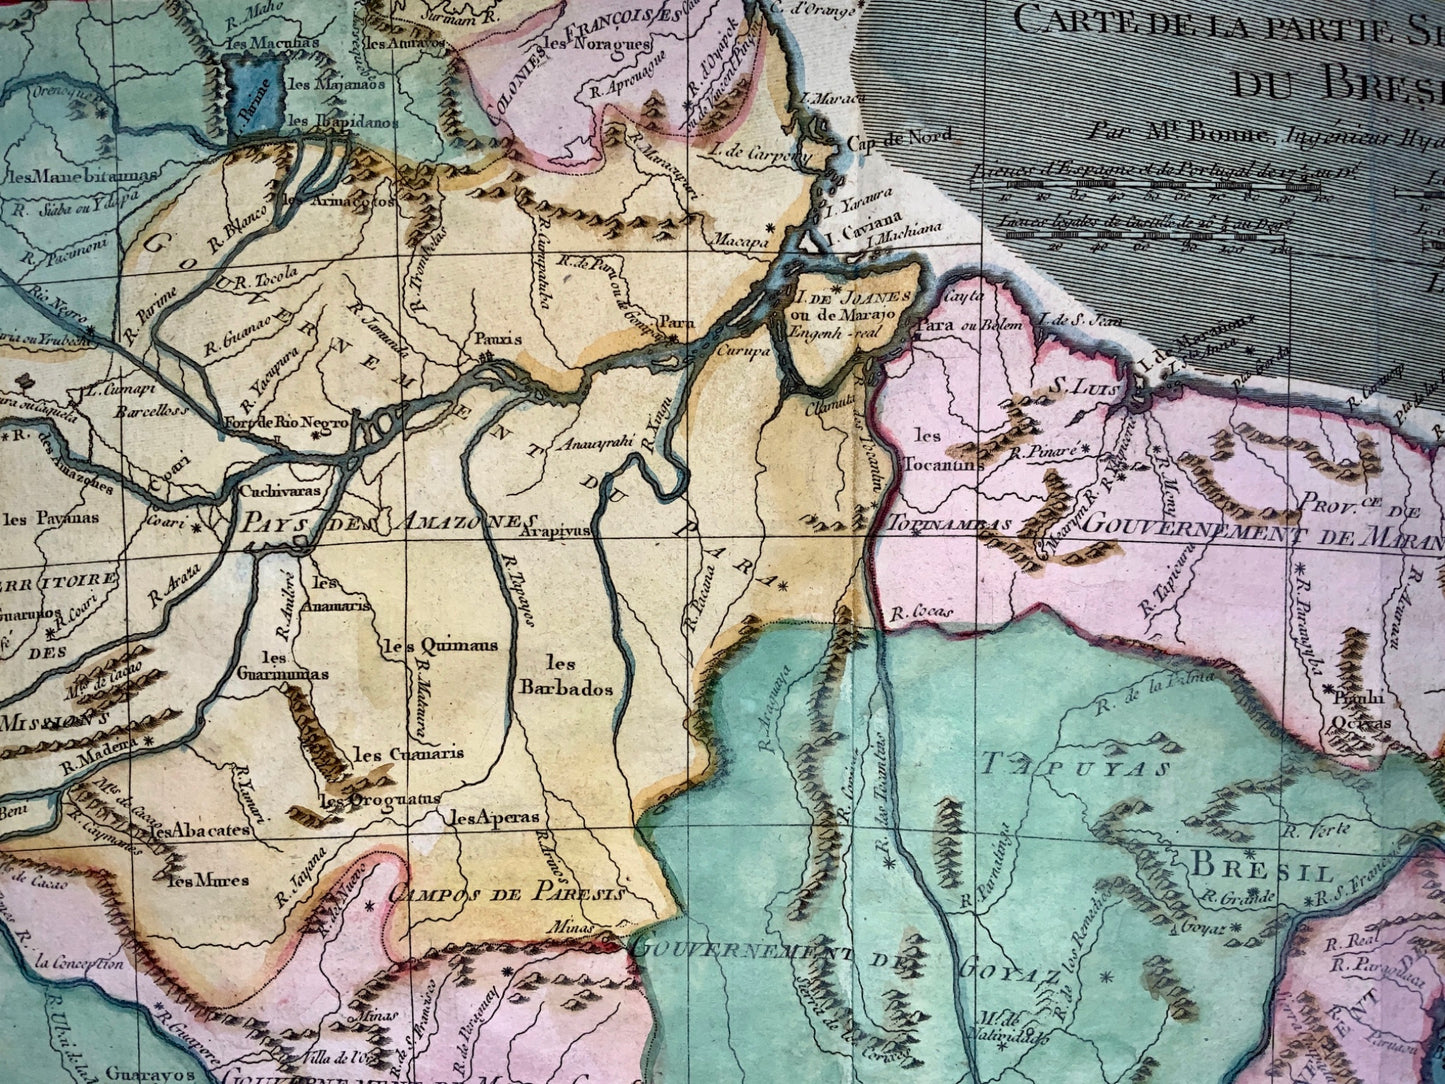 1780 Bonne - BRAZIL: Brésil et Pays des Amazones - hand coloured engraved map